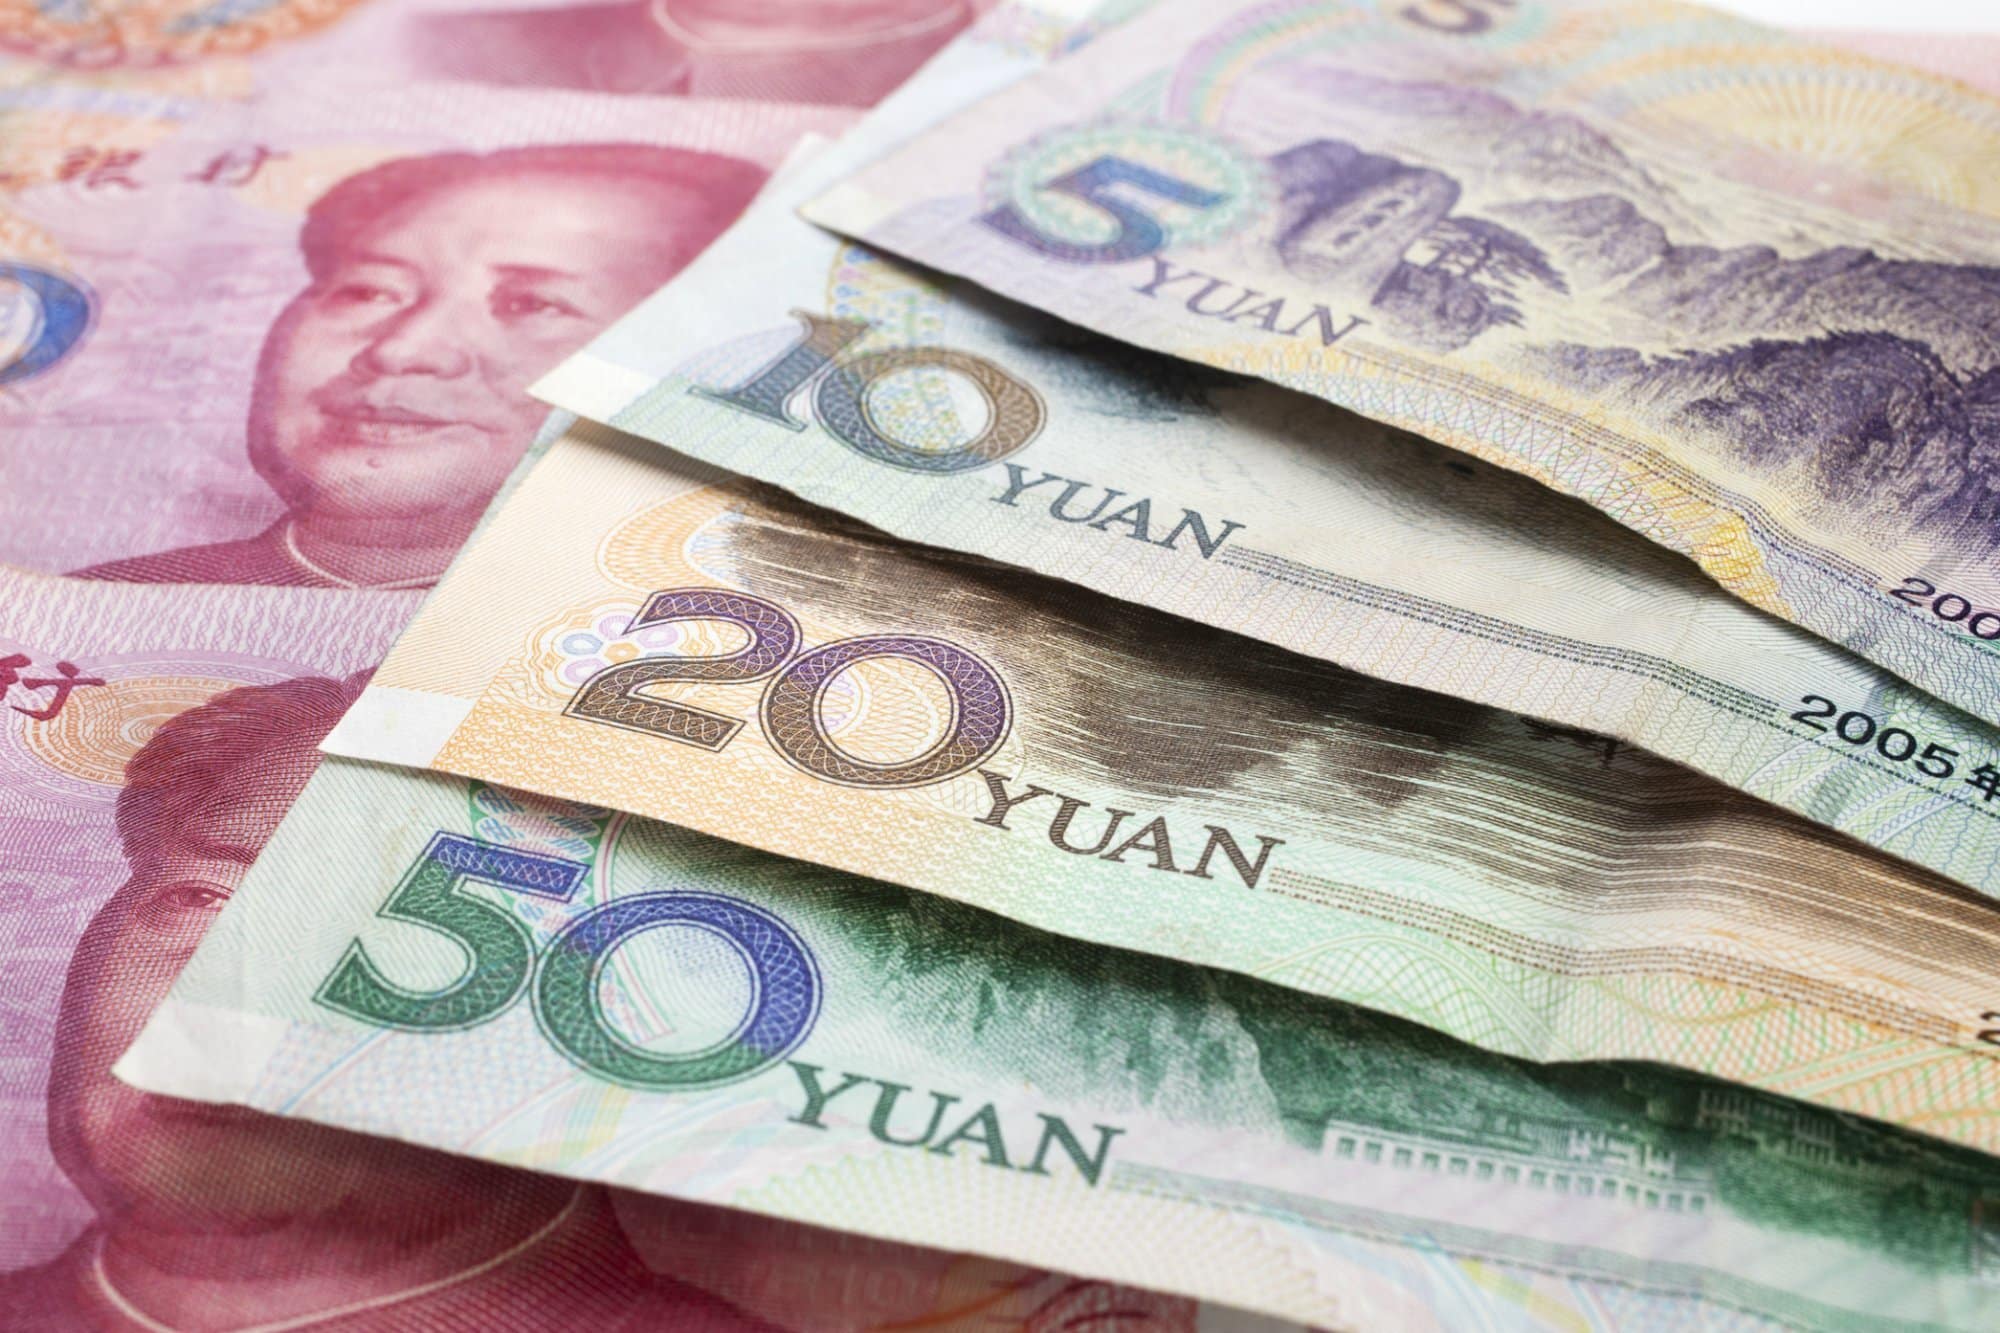 Tiền tệ Trung Quốc: Lịch sử hình thành, tỷ giá hiện nay